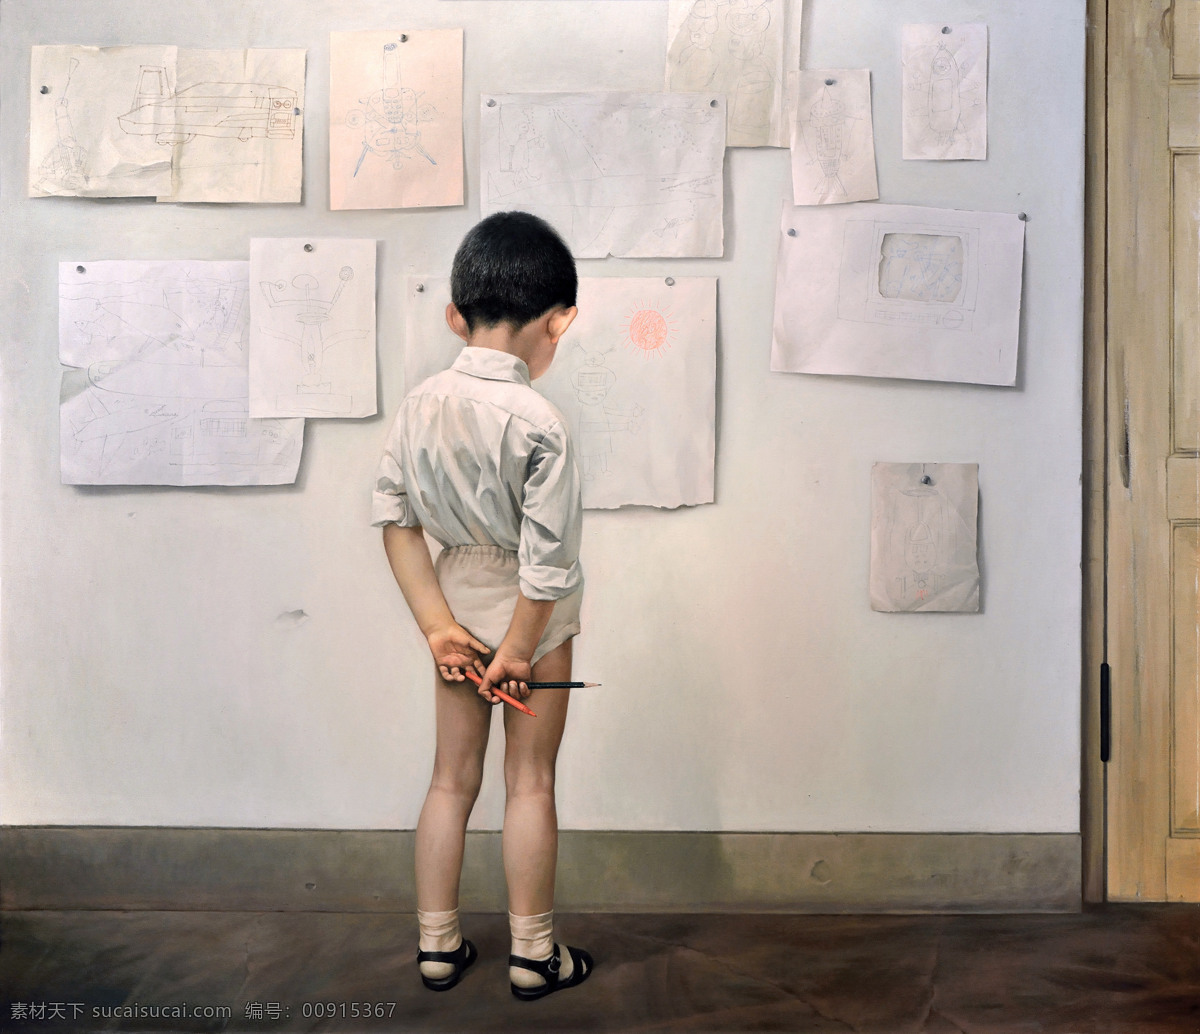 油画 王晓明作品 未来世界 超写实油画 人物油画 人物肖像 儿童 写实油画 新中国绘画 文化艺术 绘画书法